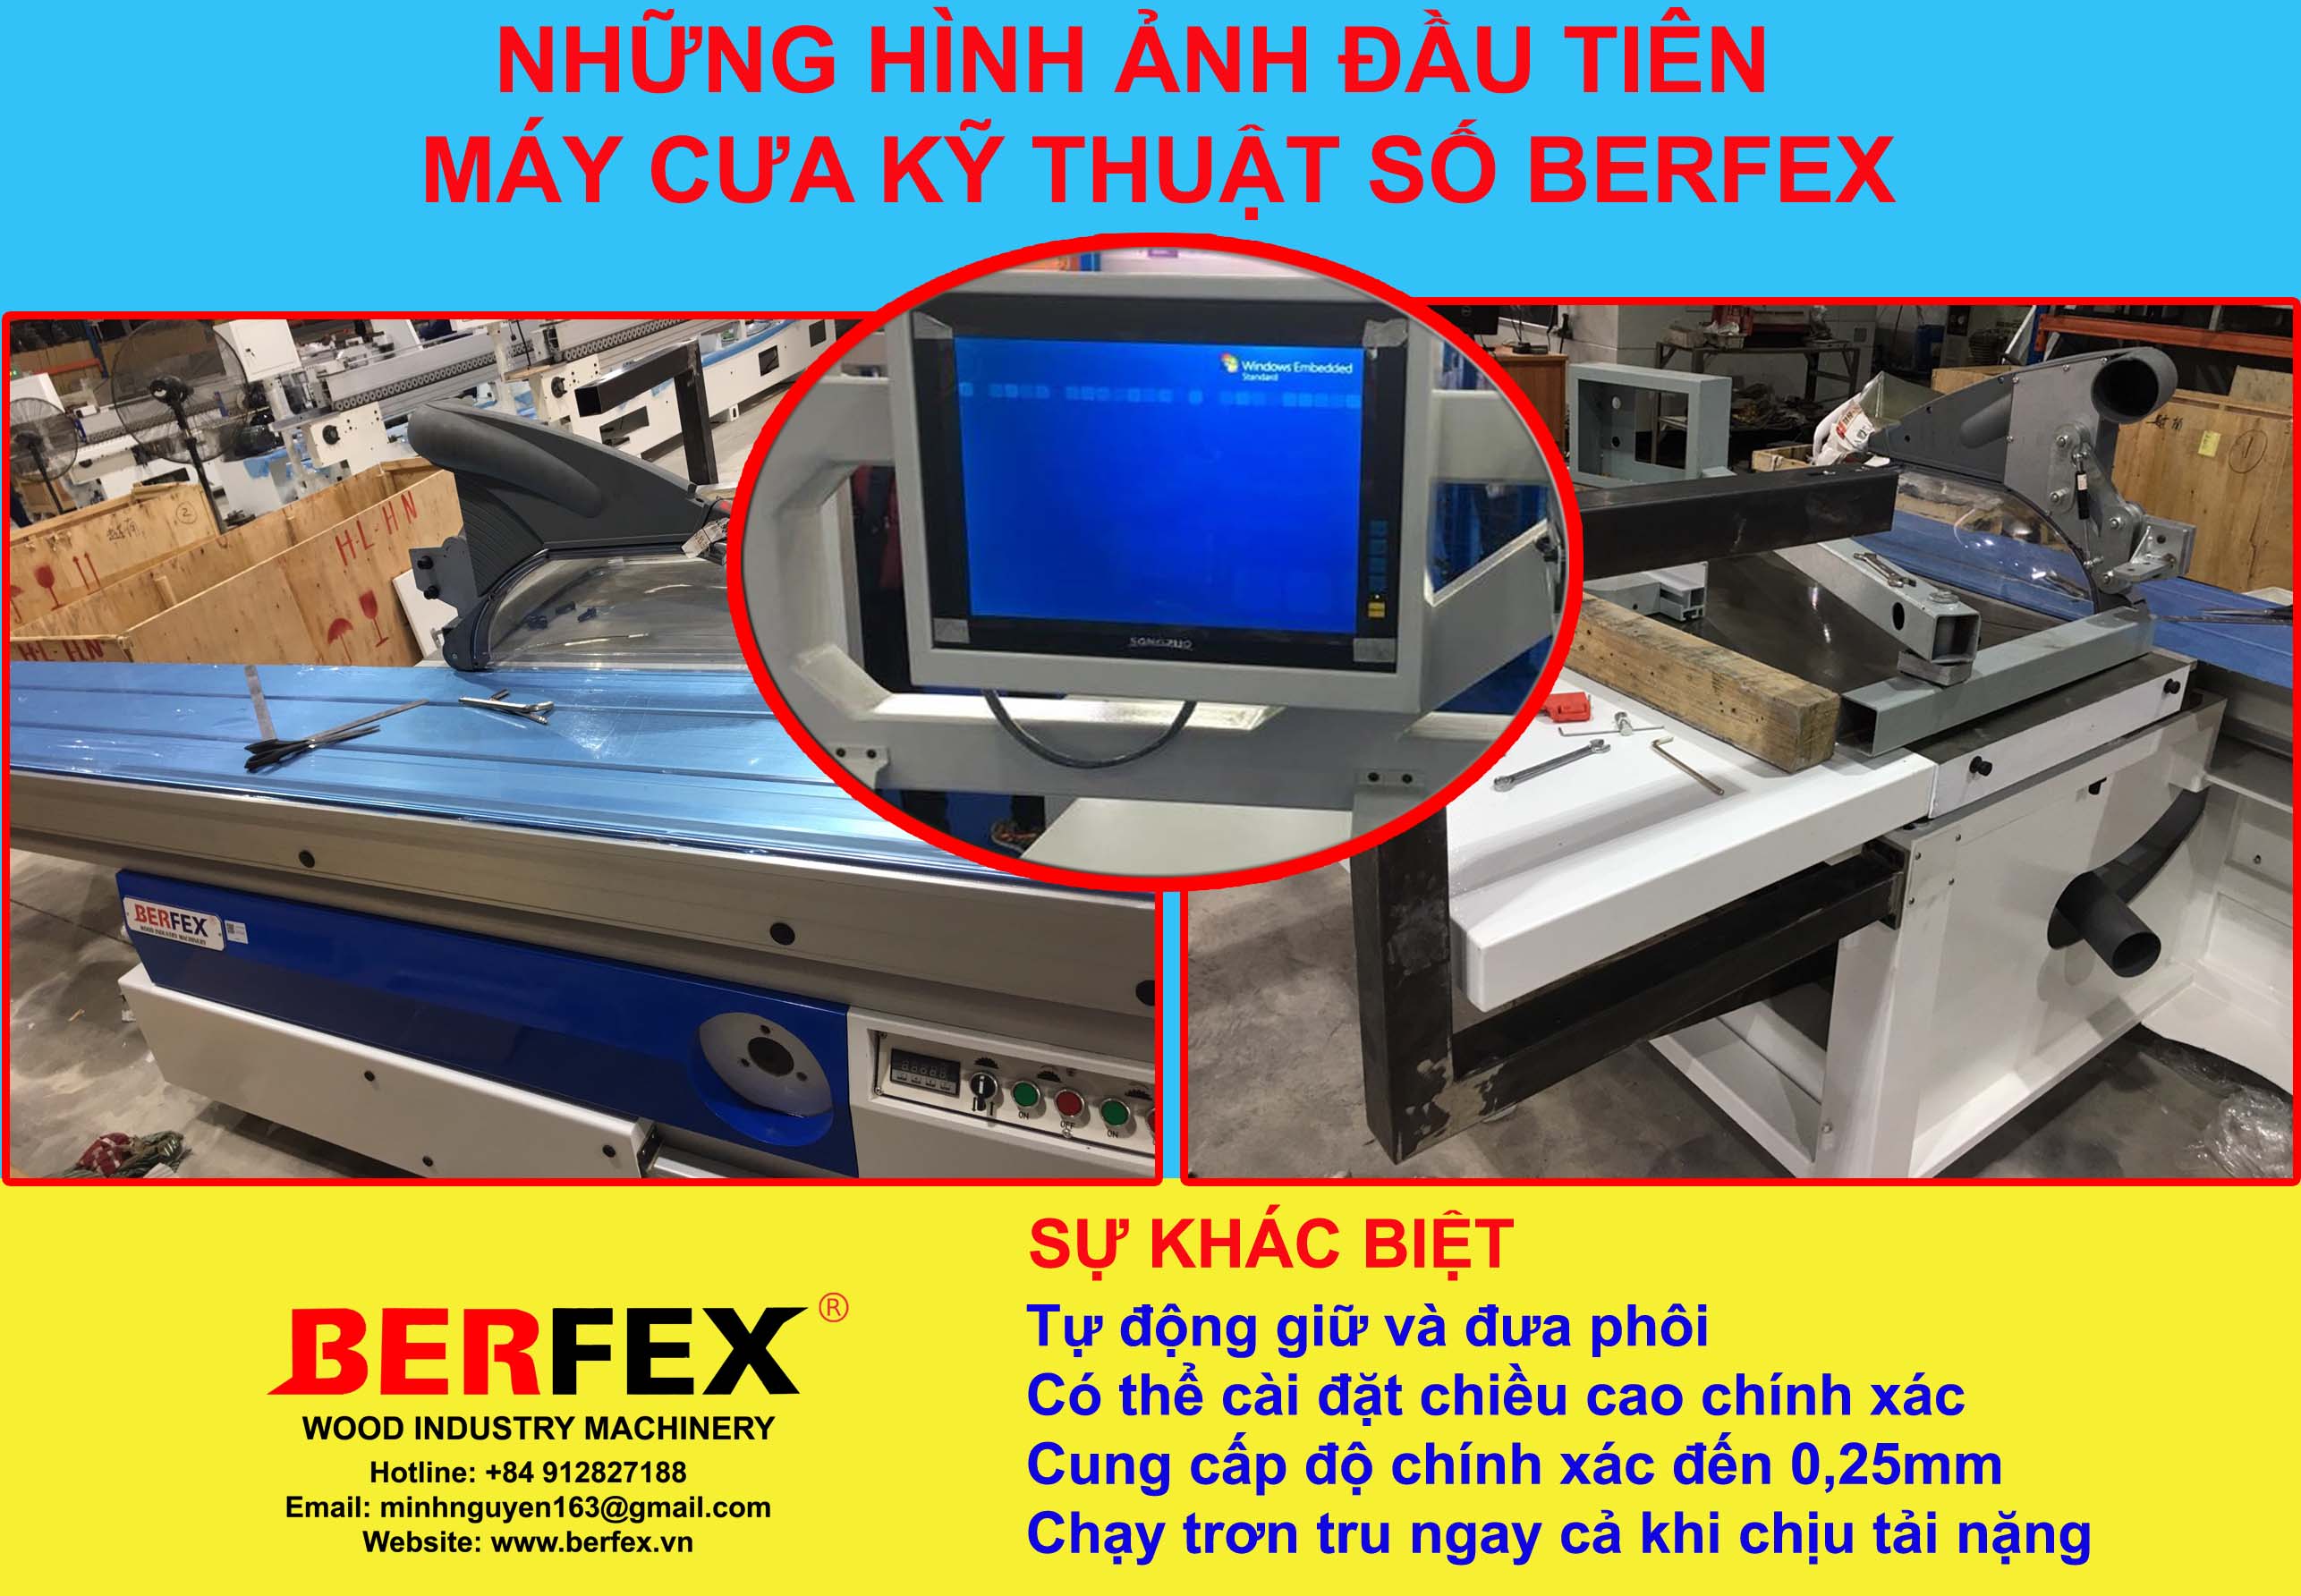 Những hình ảnh đầu tiên về máy cưa Kỹ thuật số Berfex - Việt Nam